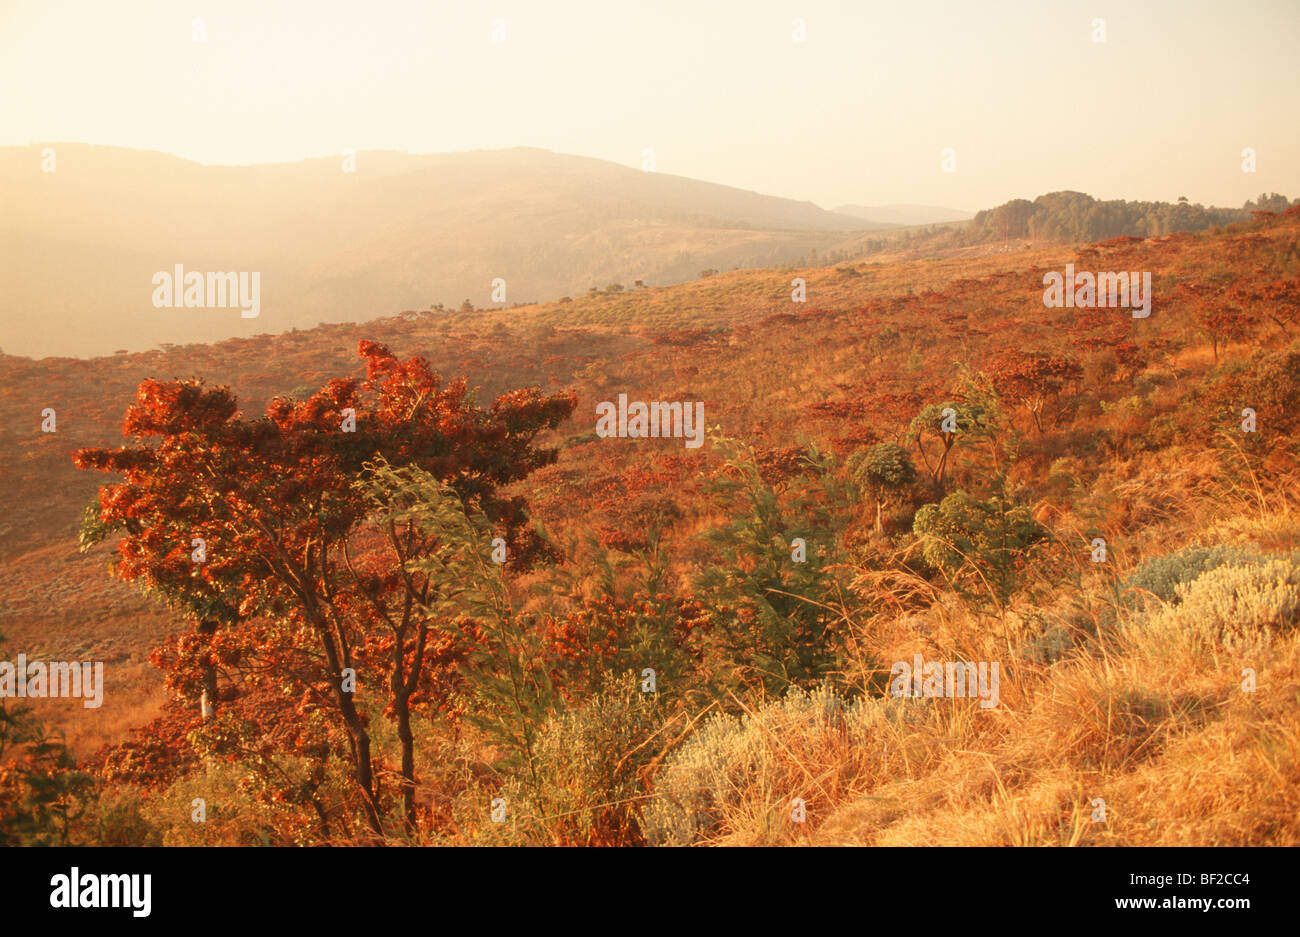 Landscape scenic with low sun, Eastern Highlands, Nyanga, Zimbabwe Stock Photo